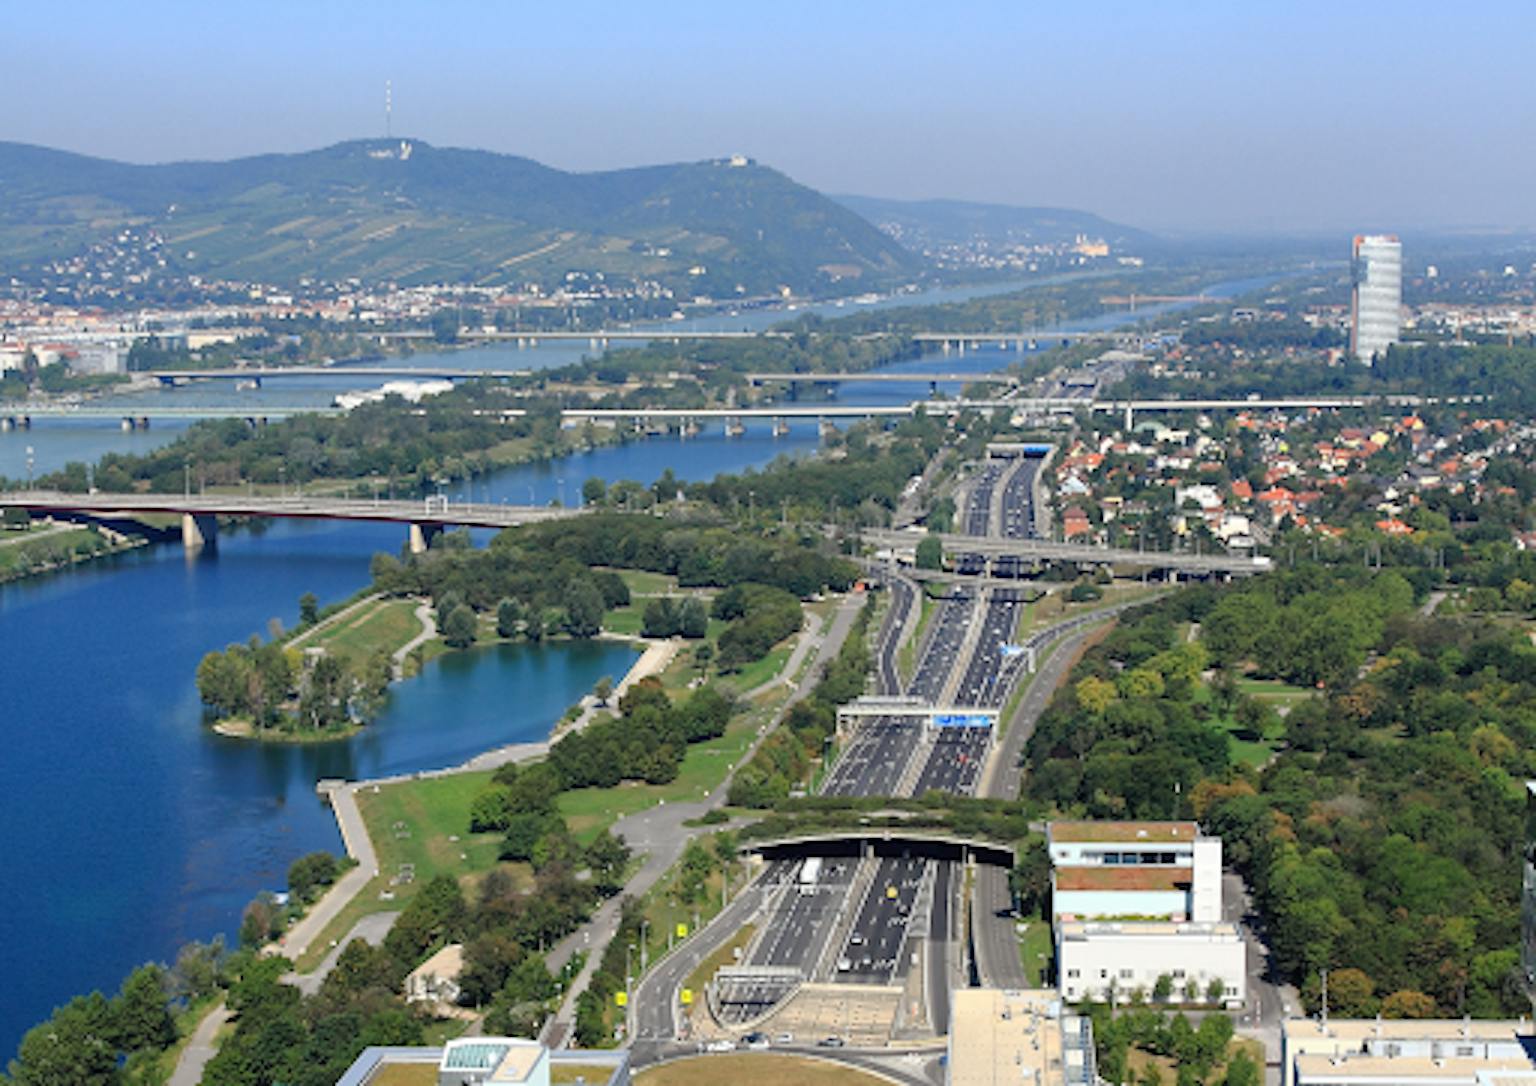 Donau eiland